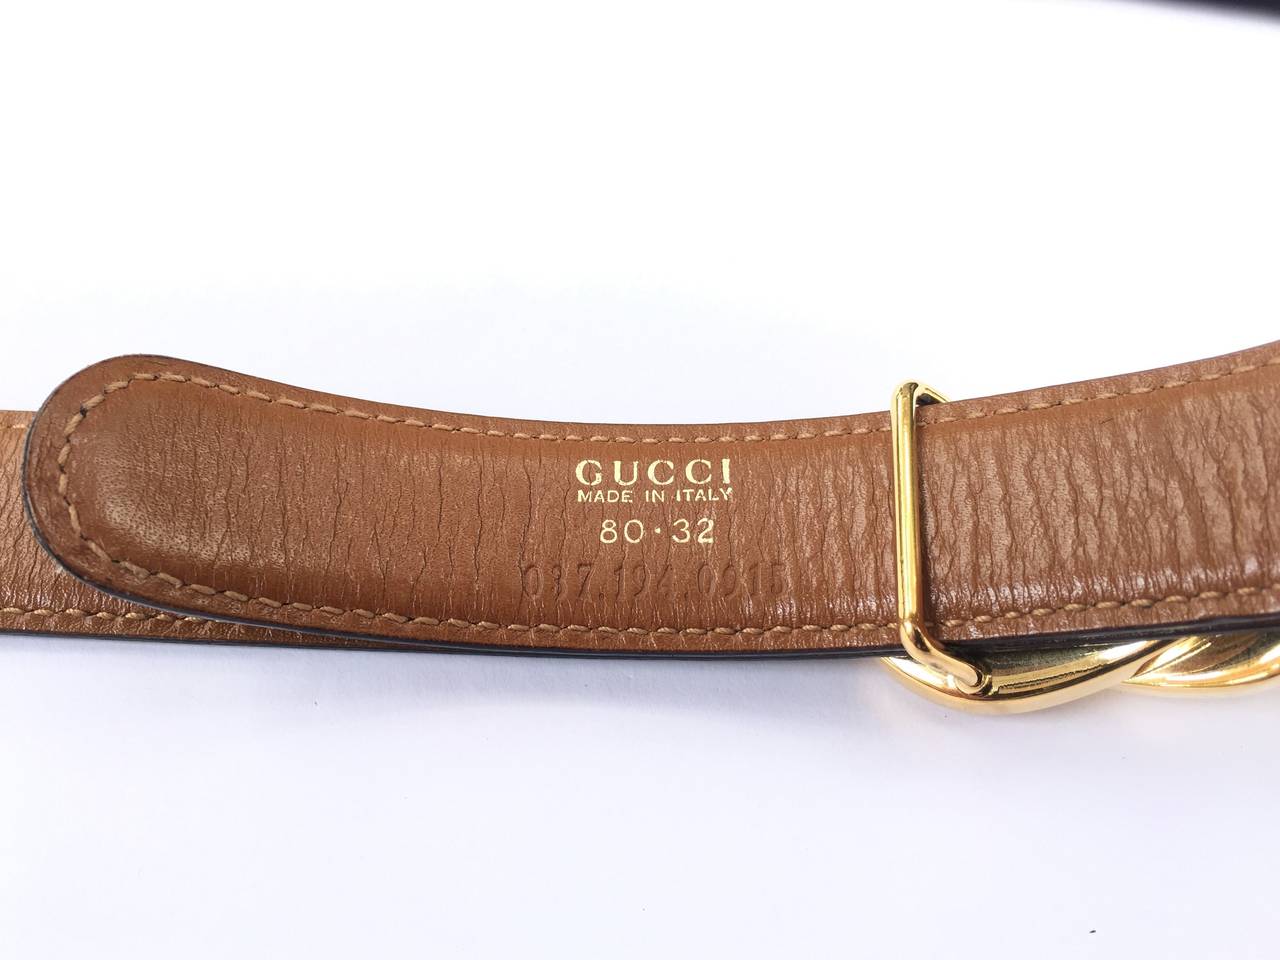 Gucci belt. 2